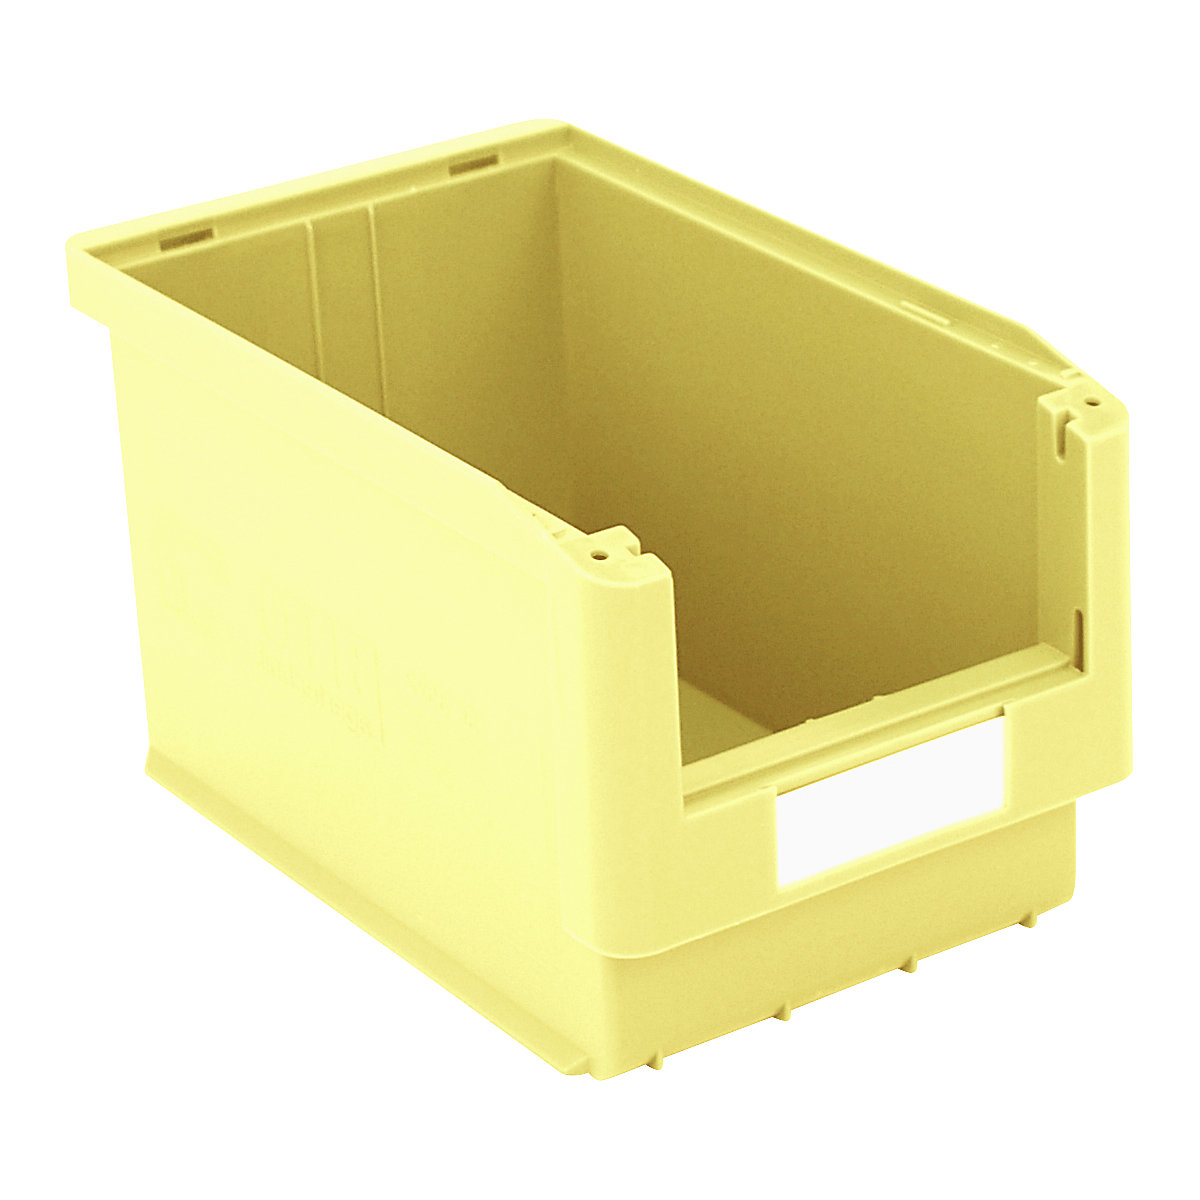 Caja visualizable – BITO, L x A x H 350 x 210 x 200 mm, UE 10 unid., amarillo-4